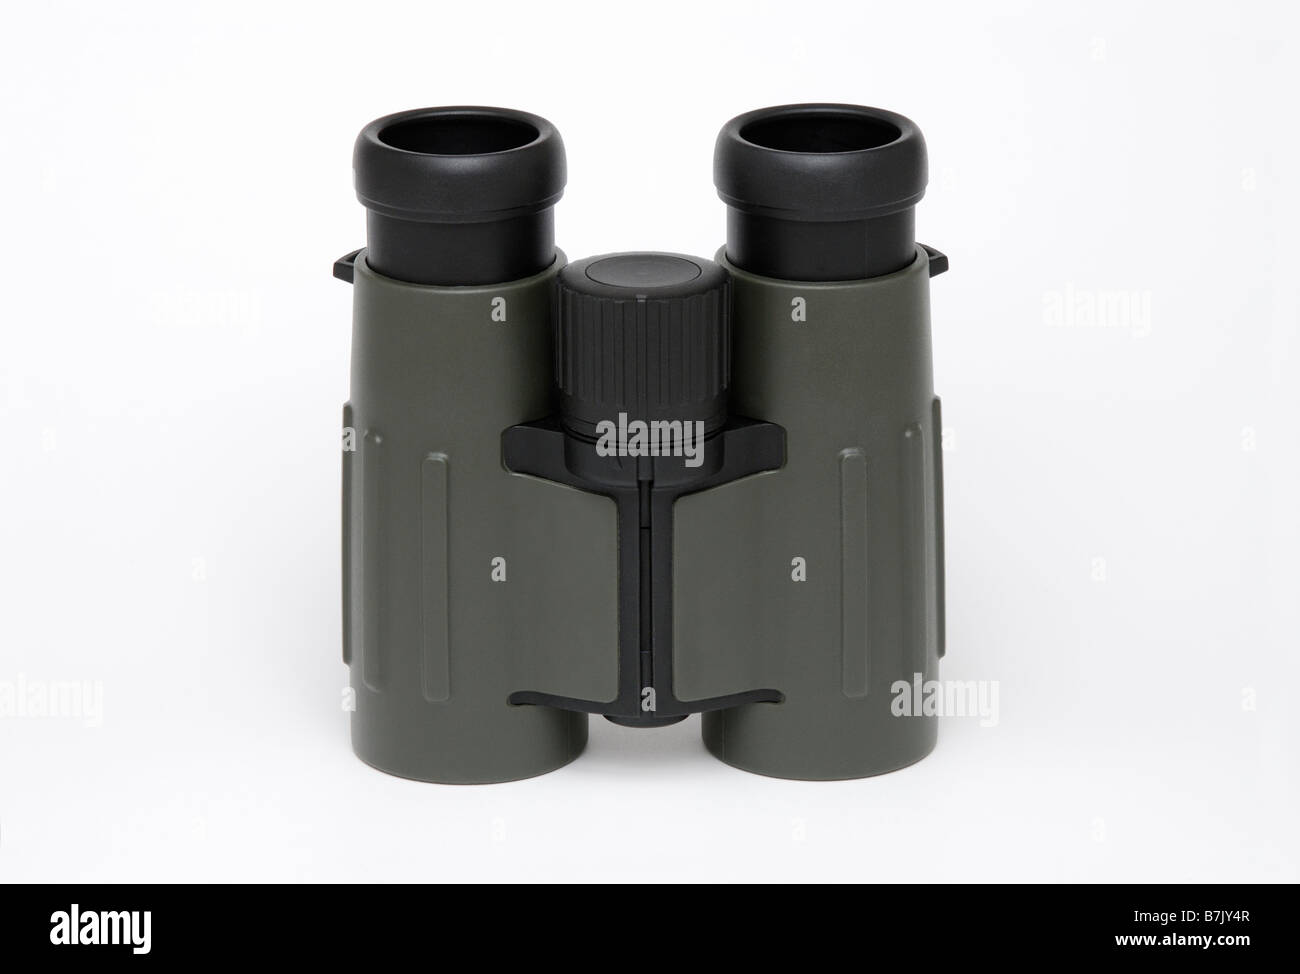 Binoculars Stock Photo